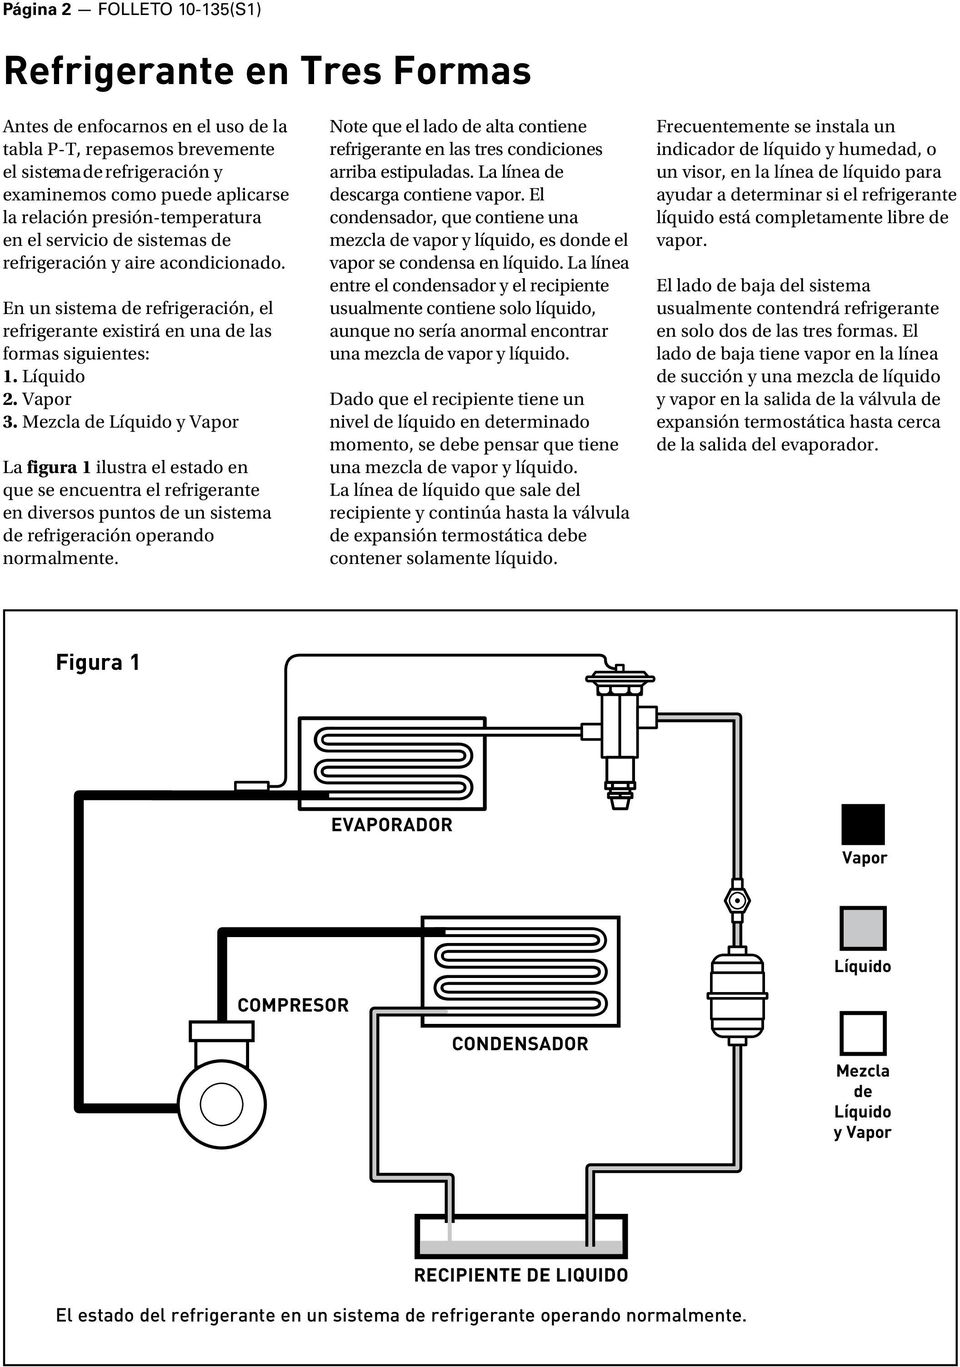 Mezcla de y Vapor La figura 1 ilustra el estado en que se encuentra el refrigerante en diversos puntos de un sistema de refrigeración operando normalmente.